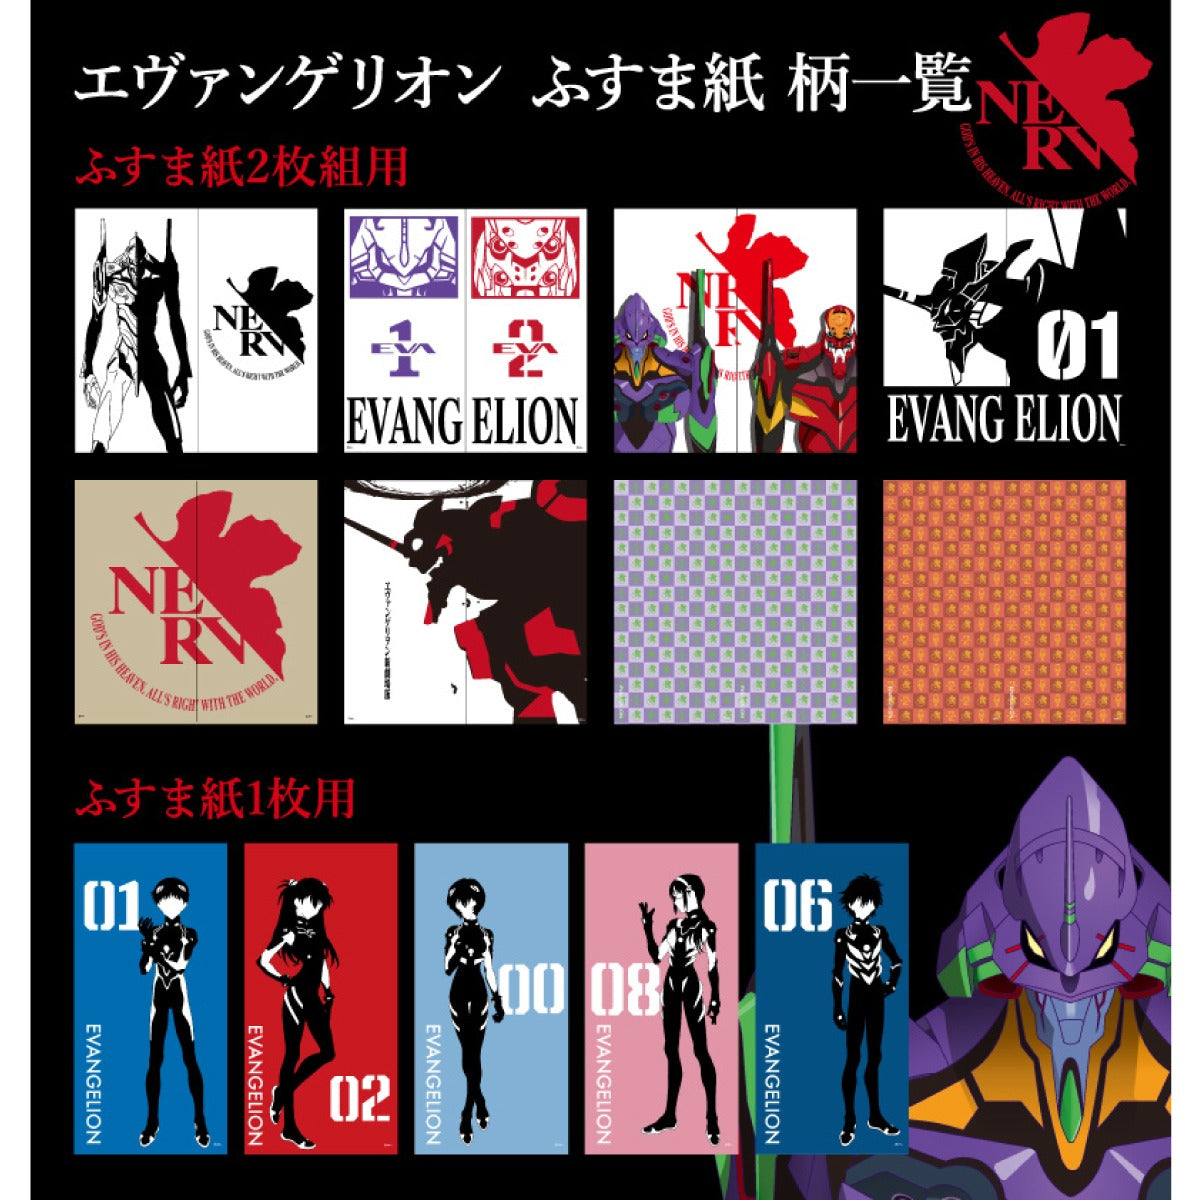 Fusuma paper Evangelion EVA-005F Width 92cm x Length 182cm 2 sheets 1 set Asahipen